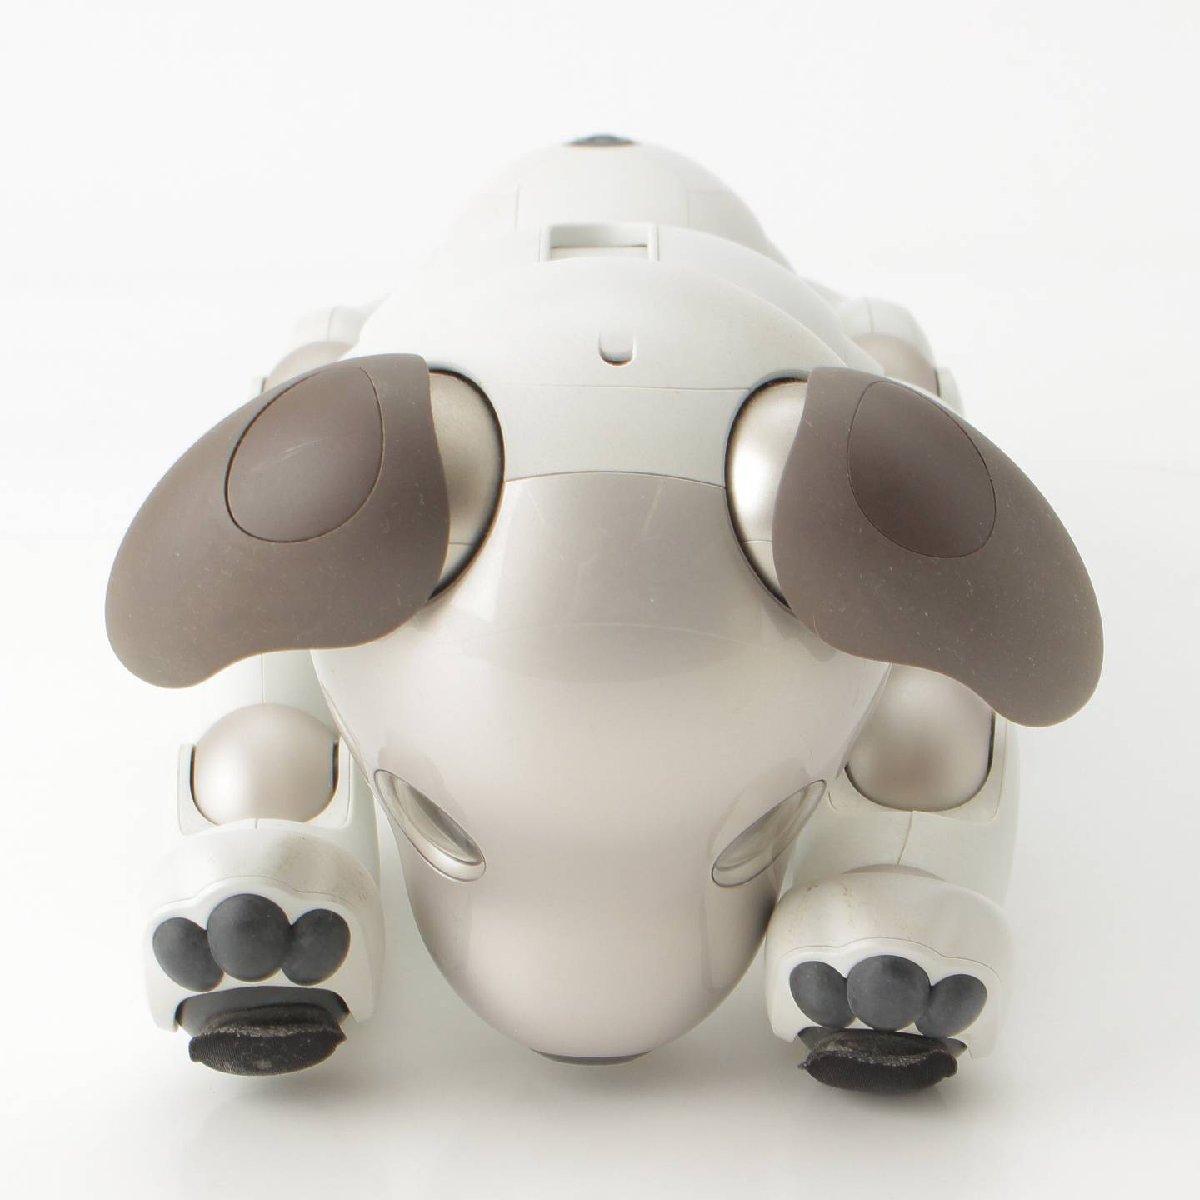 【ソニー】SONY　犬型 バーチャルペット ロボット aibo アイボ ERS-1000 ホワイト 【中古】【正規品保証】193525_画像2